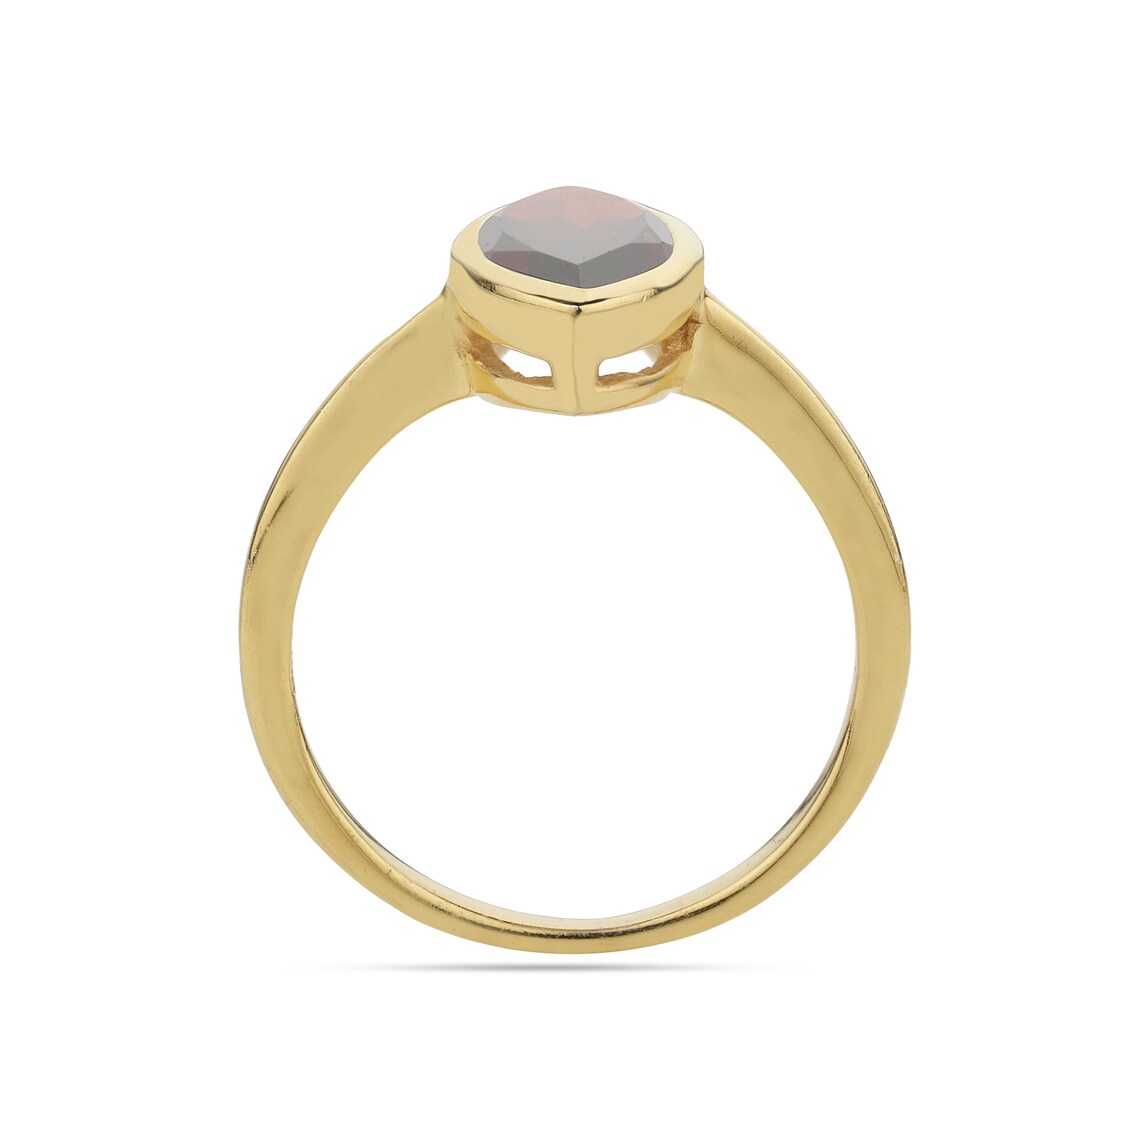 Natural Garnet Ring, Garnet Marquise Gold Ring, Garnet Gemstone Ring